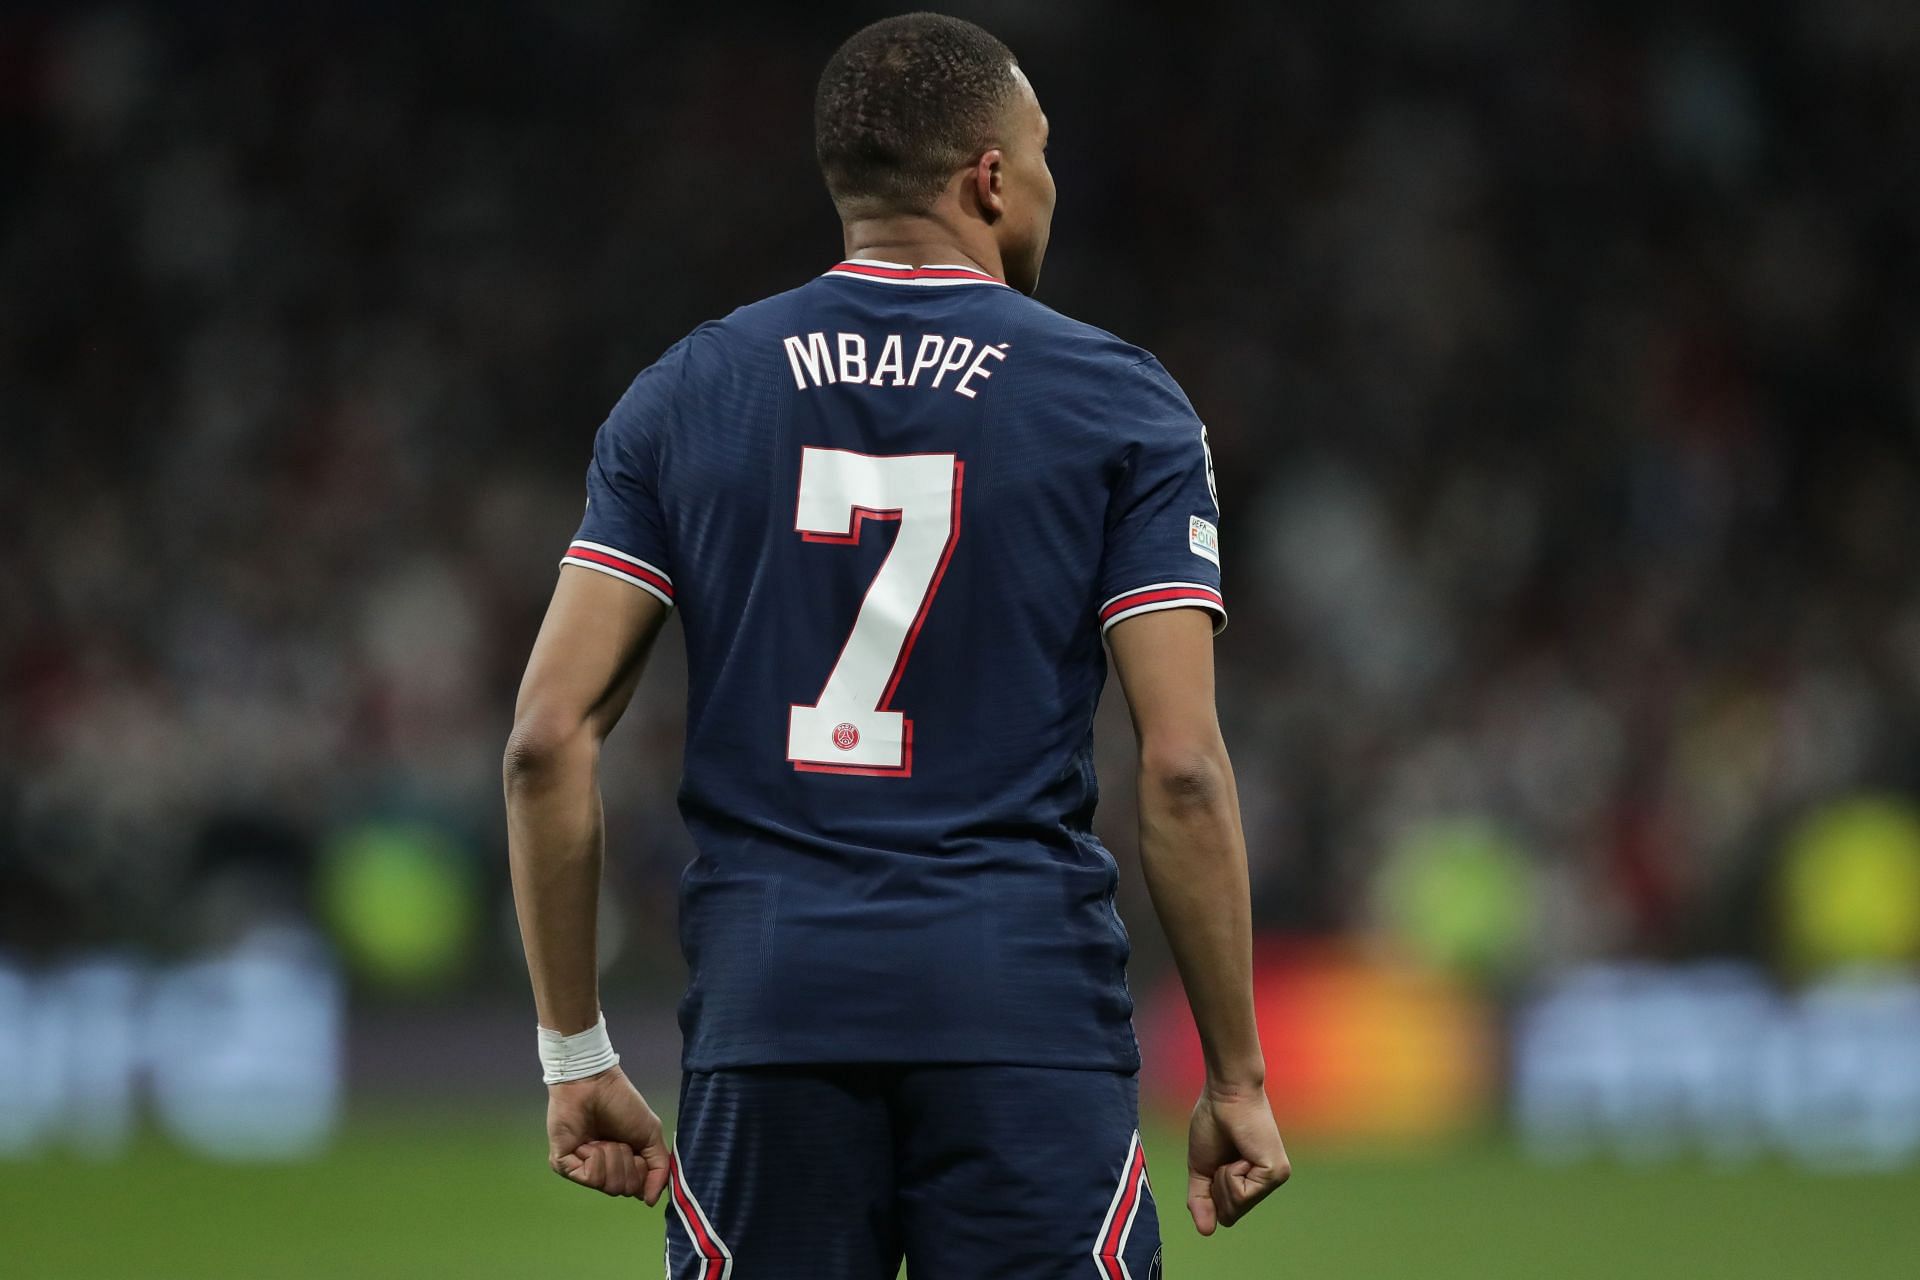 Mbappe fait partie des footballeurs français les plus en vue au monde